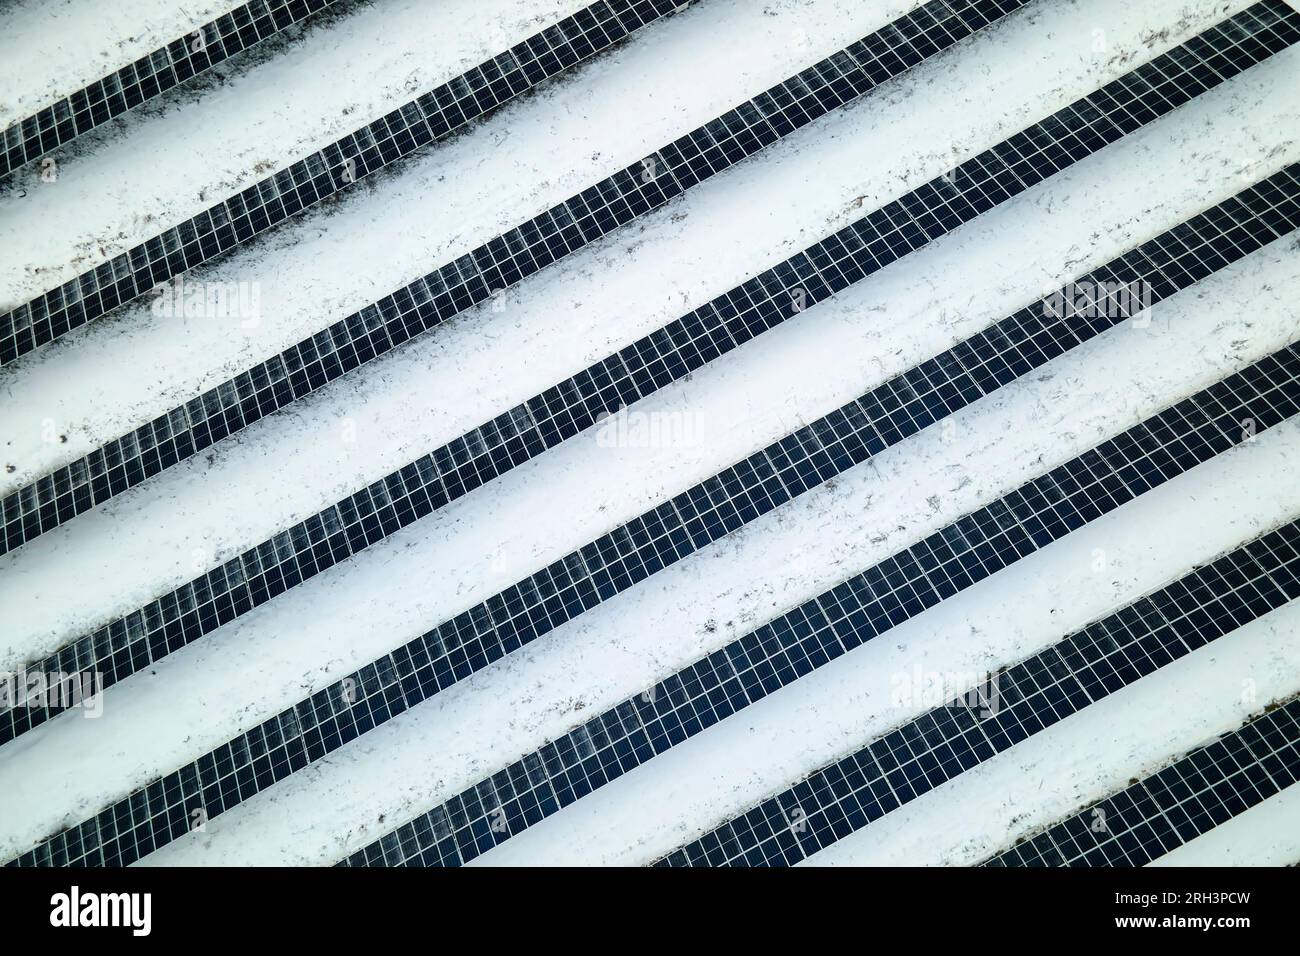 Vue aérienne de la neige couverte centrale électrique durable avec des rangées de panneaux photovoltaïques solaires pour produire de l'énergie électrique propre. Faible Banque D'Images